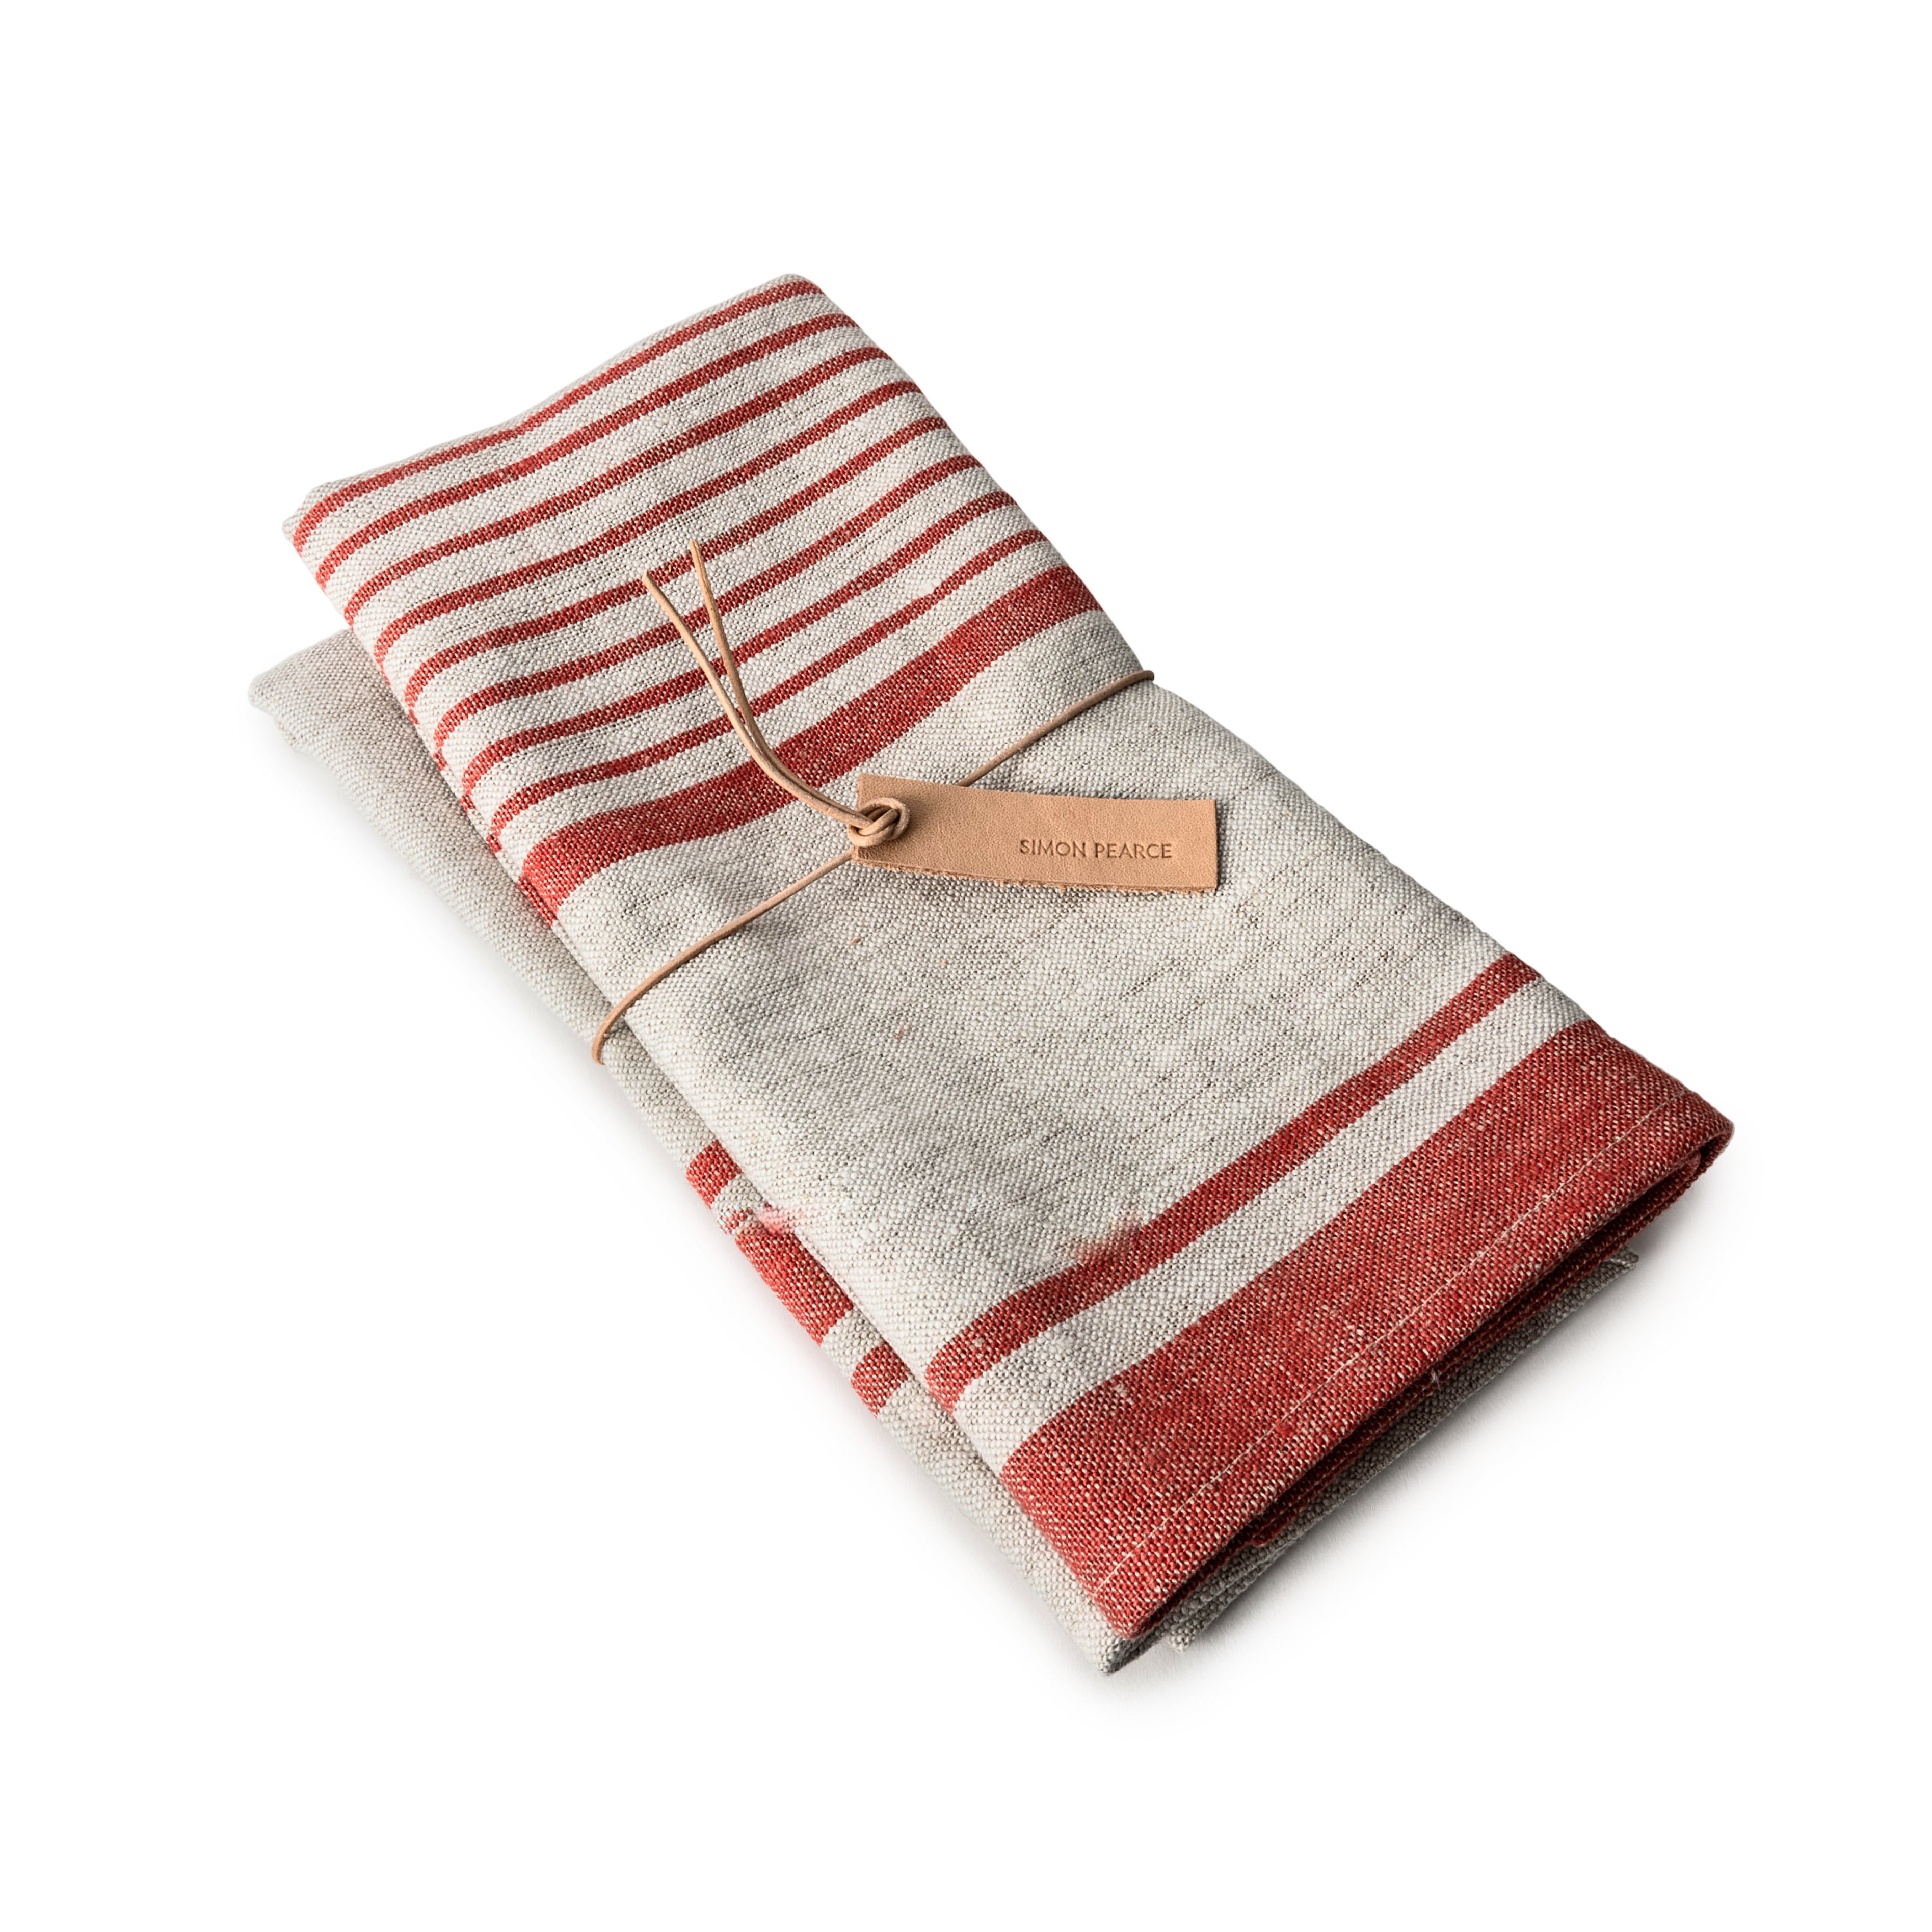 https://simonpearce.com/cdn/shop/files/10054-red-striped-bistro-linen-napkins-set-of-2.jpg?v=1695924577